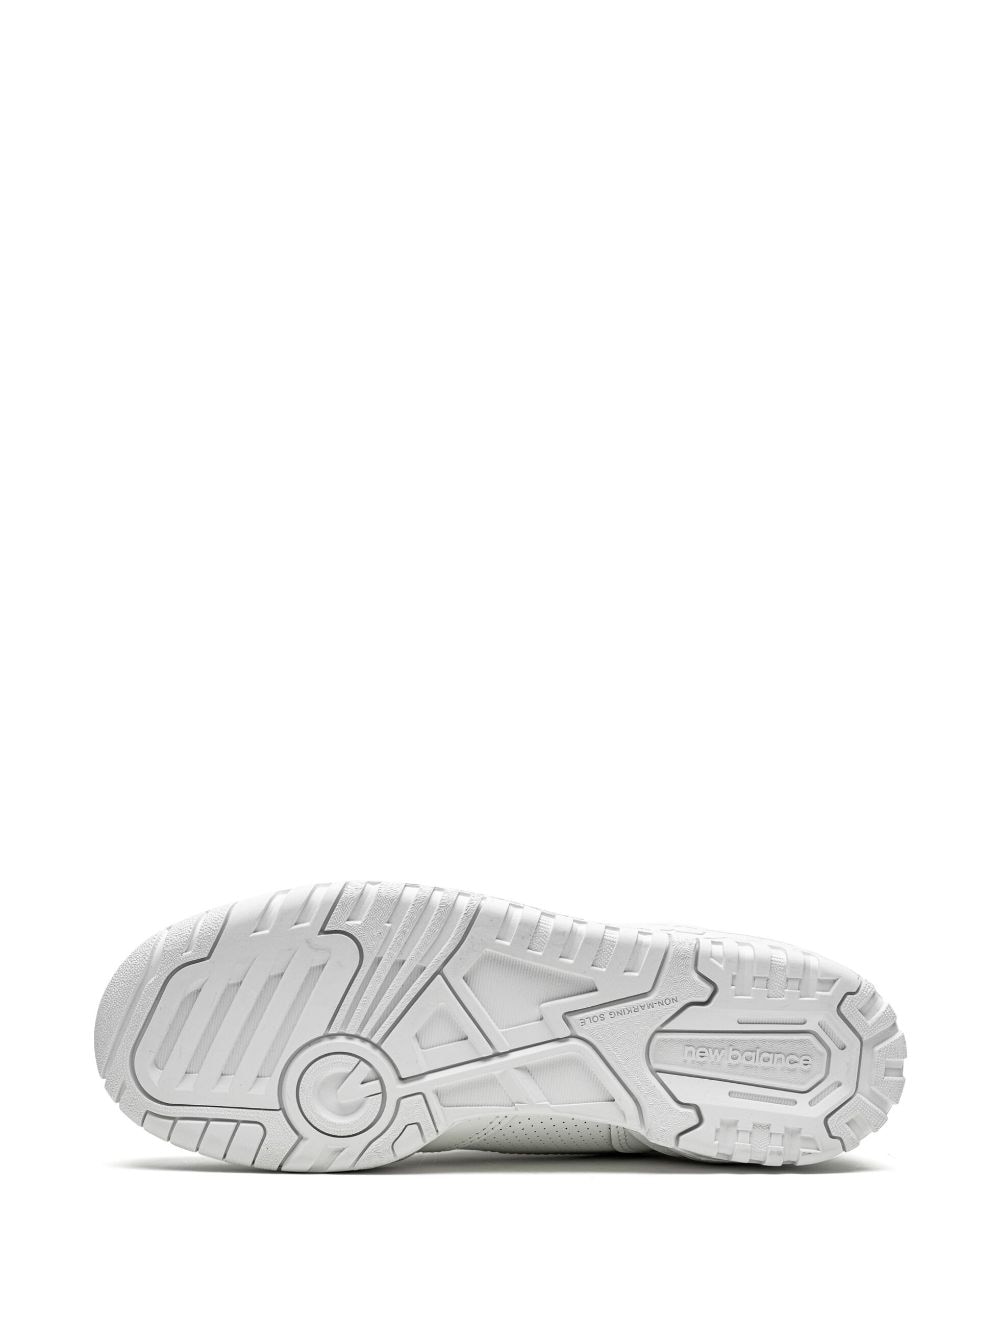 Shop New Balance 550 "triple White" Sneakers